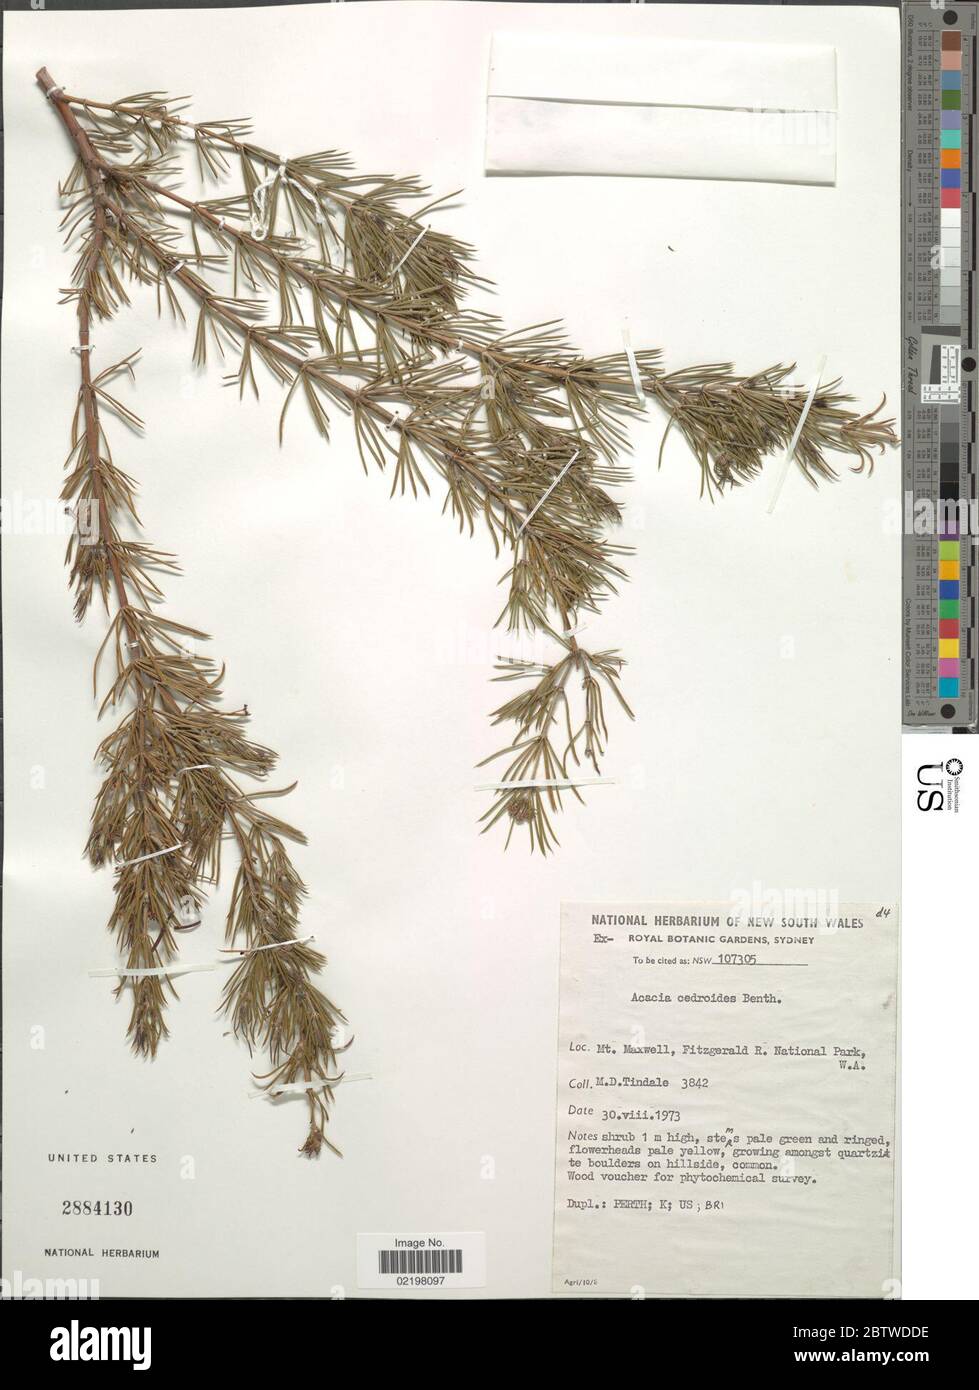 Acacia cedroides Benth. Stock Photo